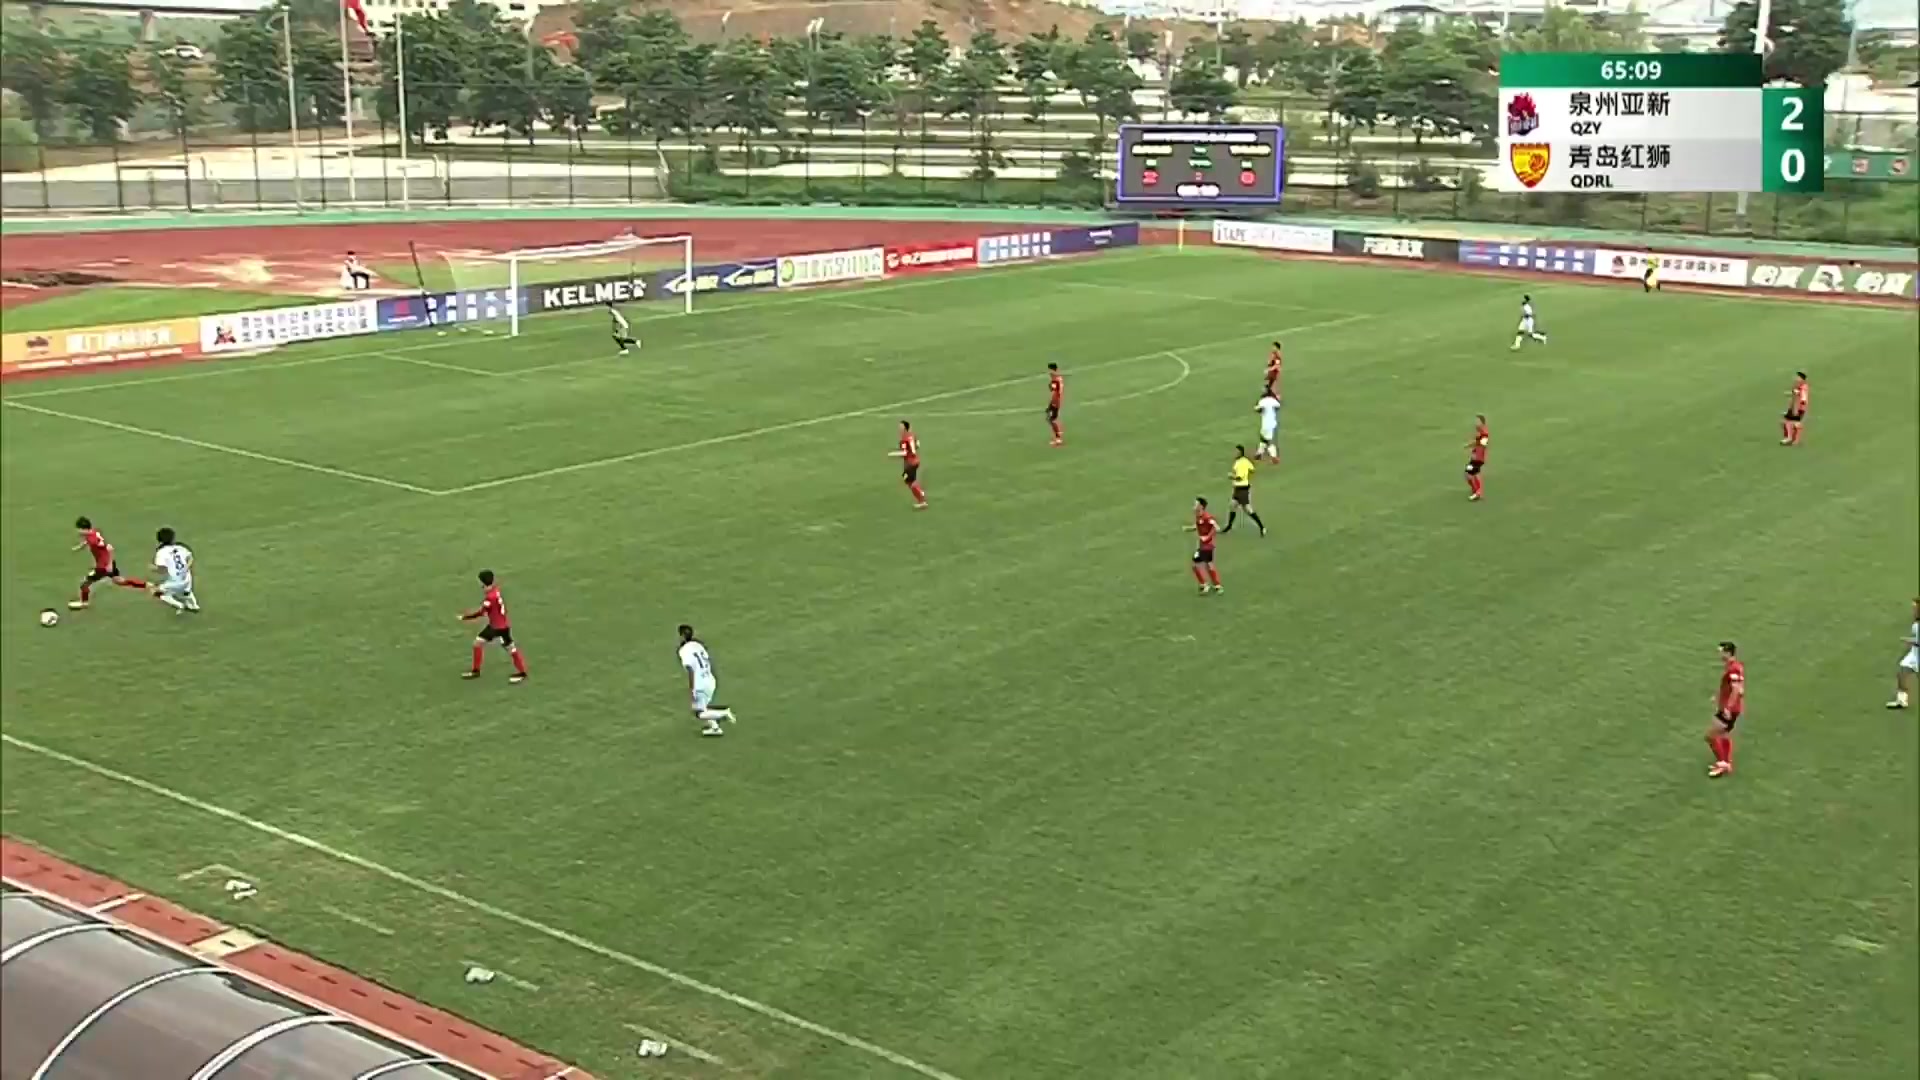 CHA D2 Quanzhou Yaxin Vs Qingdao Red Lions Gao Xiang Goal in 66 min, Score 3:0